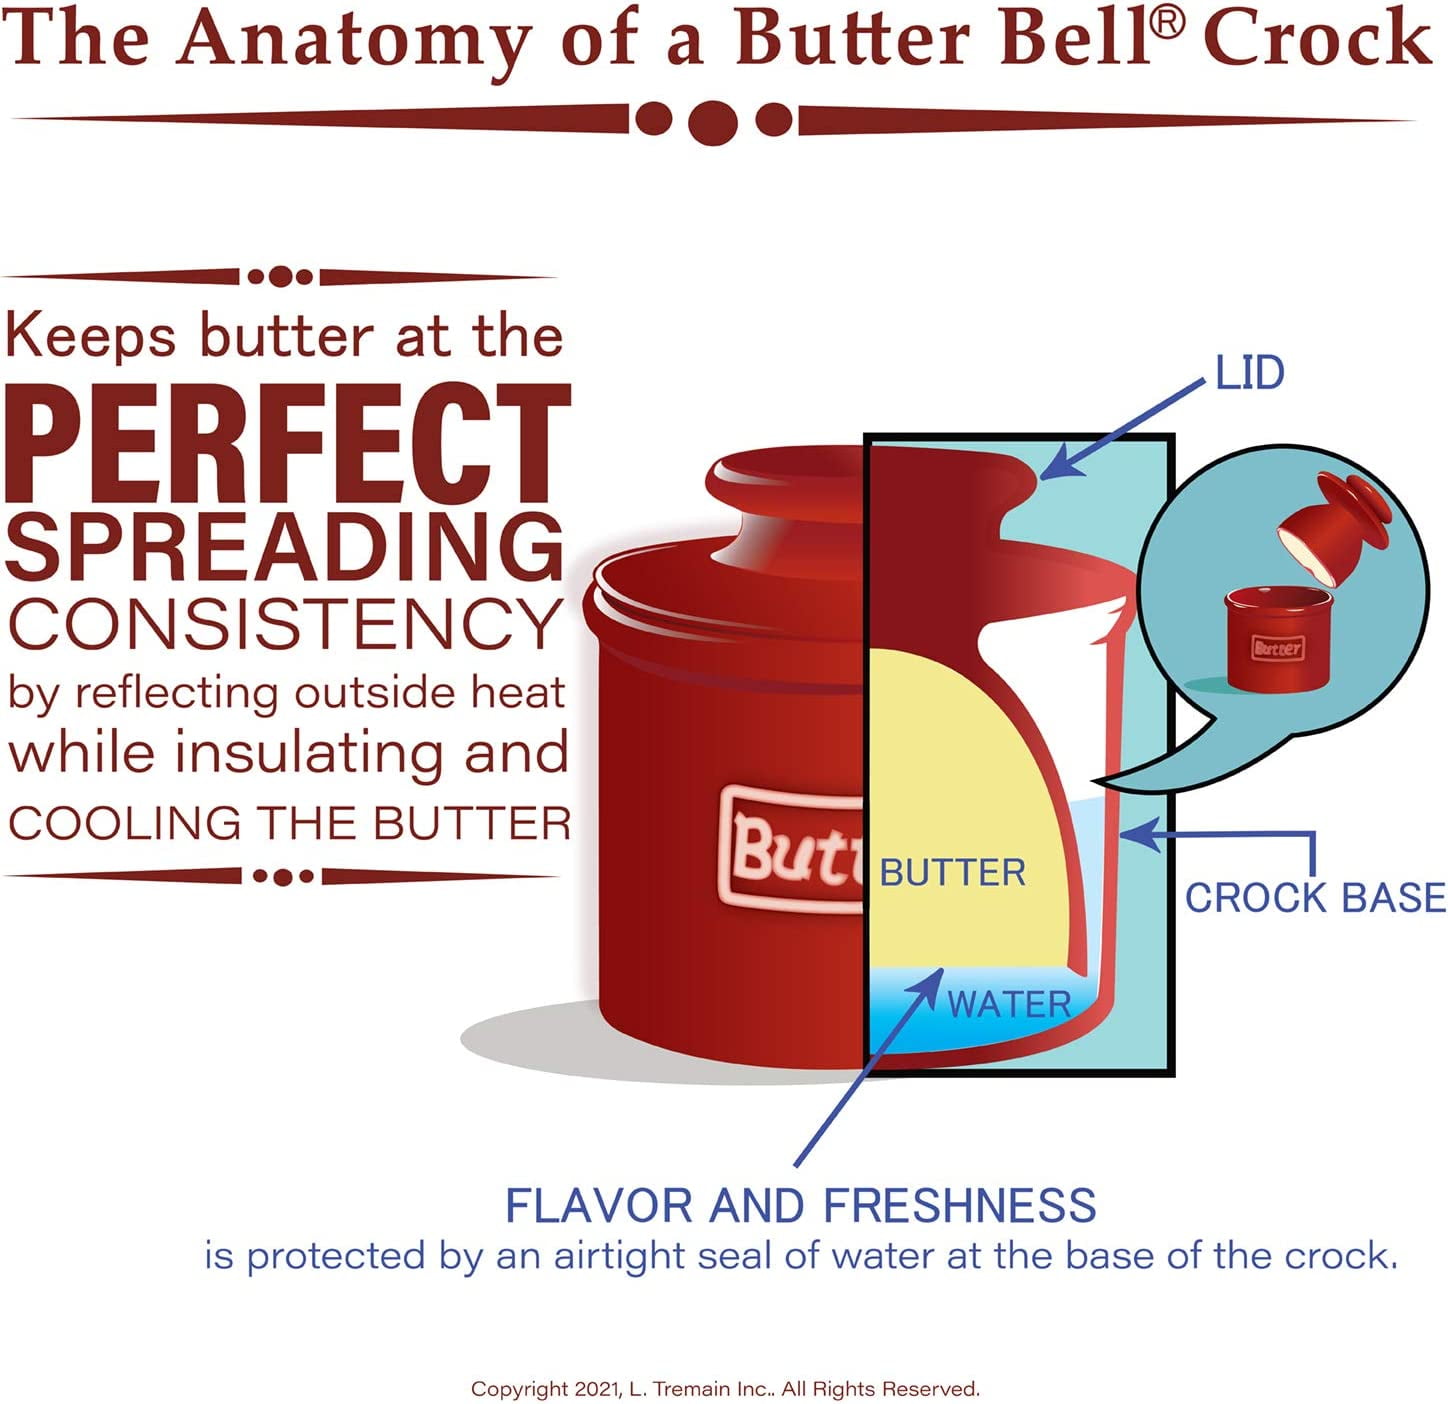 French Butter Keeper – Butter Bell